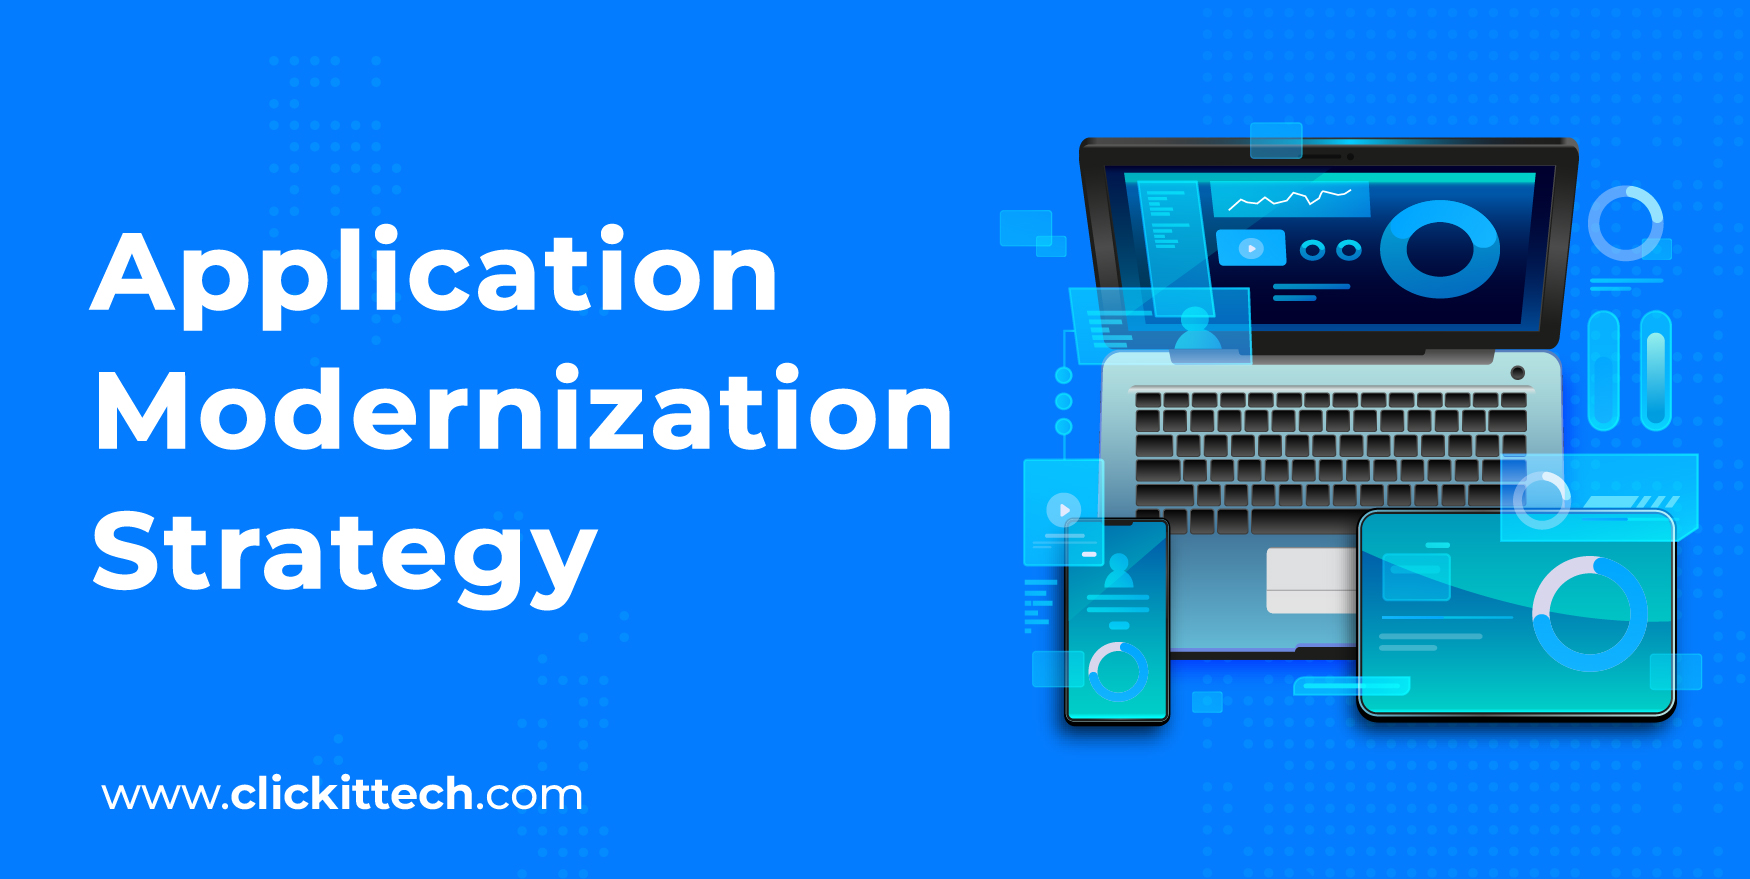 Application Modernization Strategy